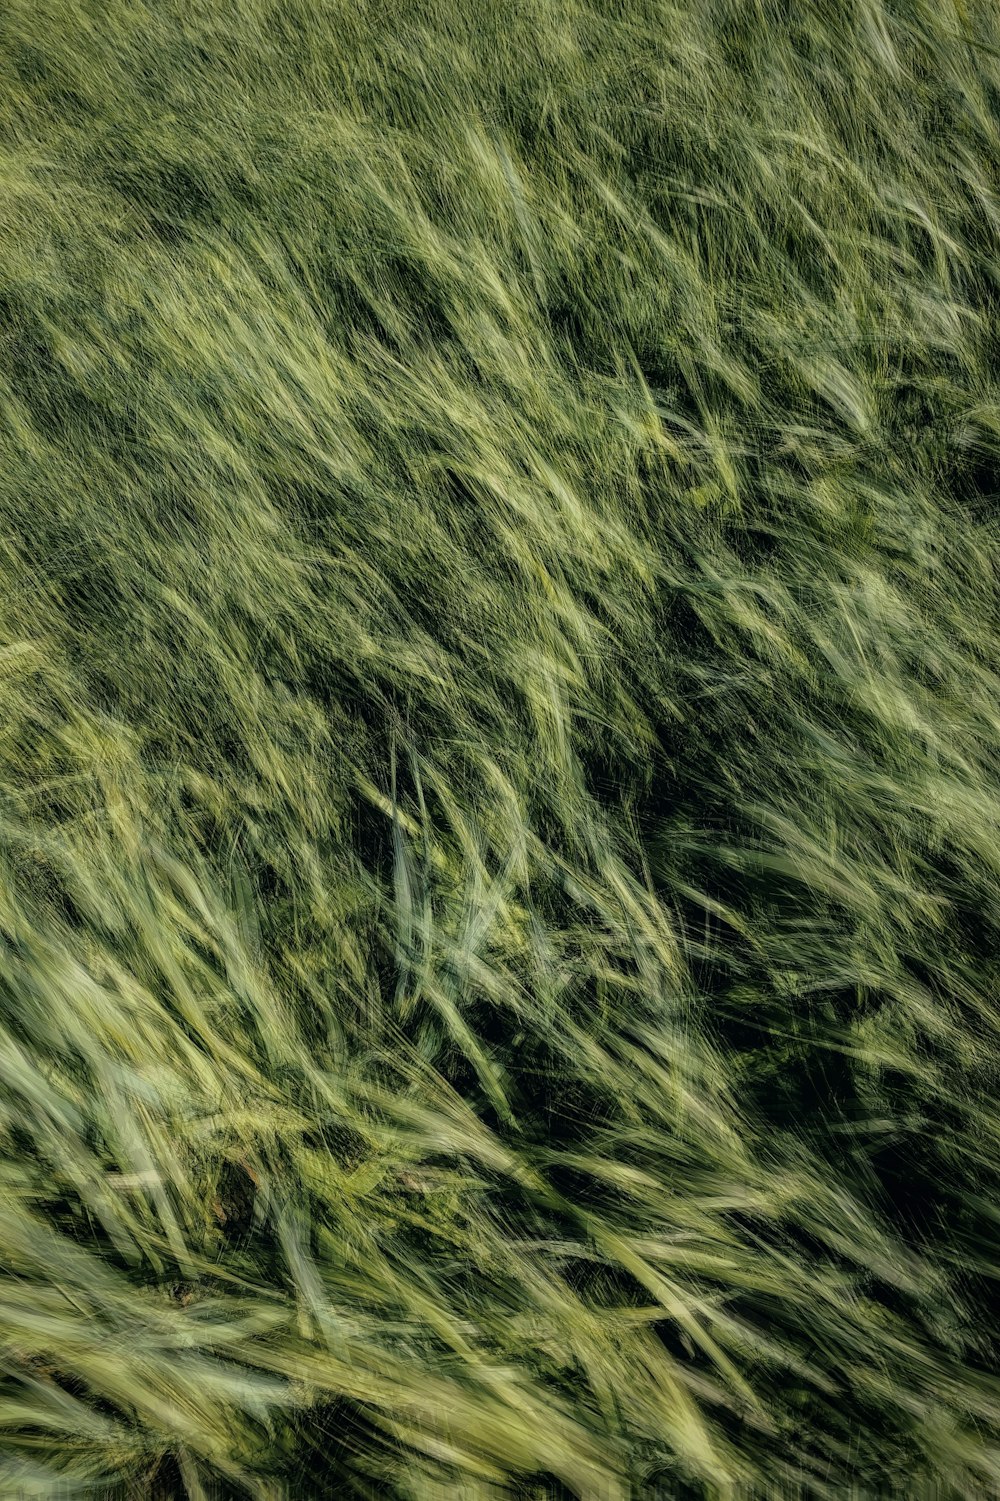 a field of grass